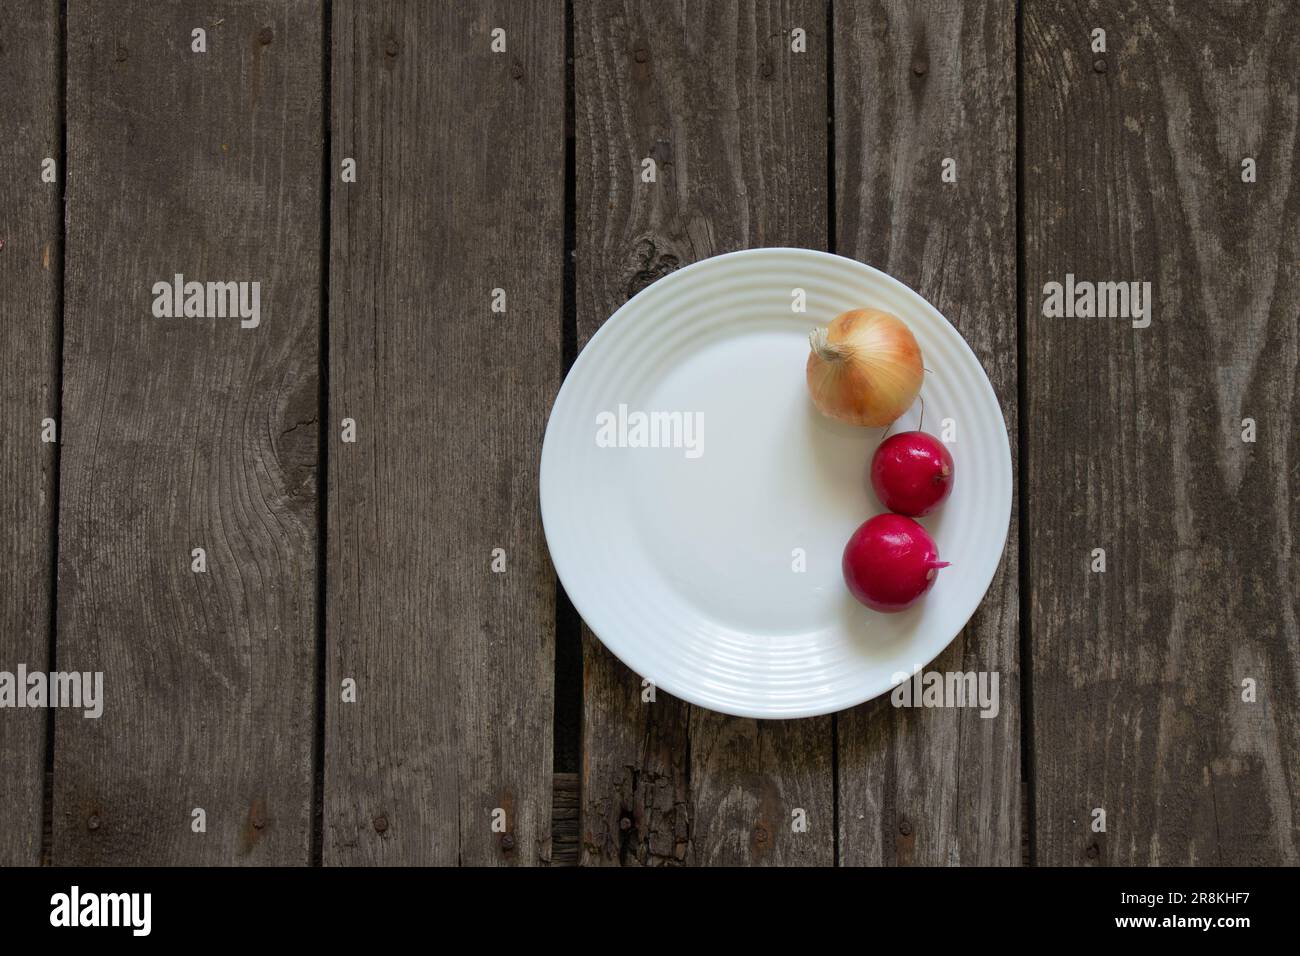 le radis à l'oignon se trouve sur une assiette sur une table en bois Banque D'Images